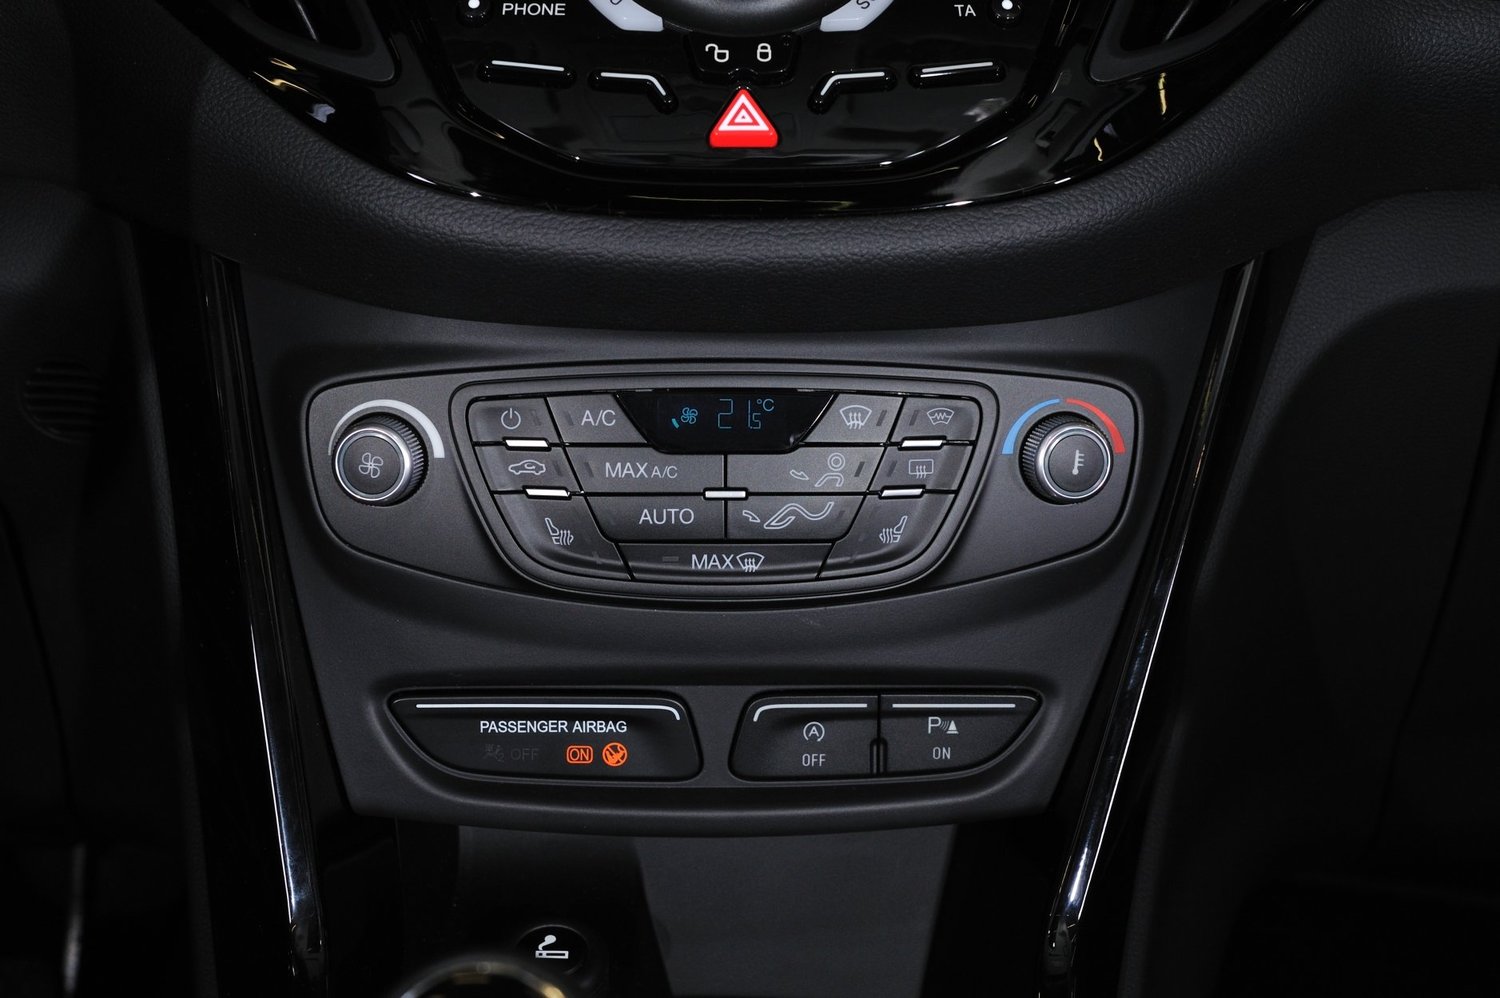 минивэн Ford B-MAX 2012 - 2016г выпуска модификация 1.0 MT (100 л.с.)